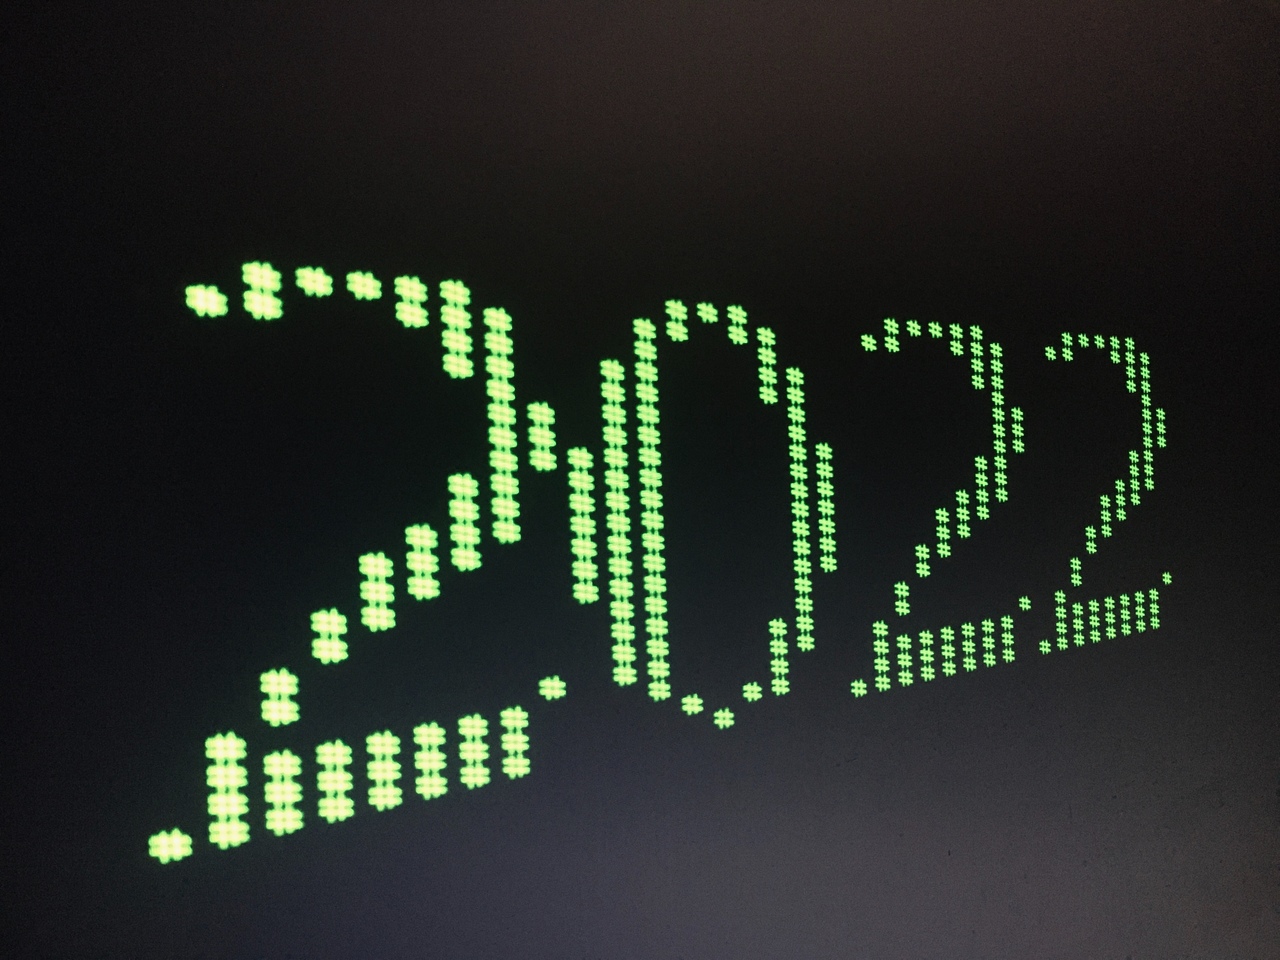 8 populiariausios kriptovaliutos, į kurias reikia investuoti 2022 m